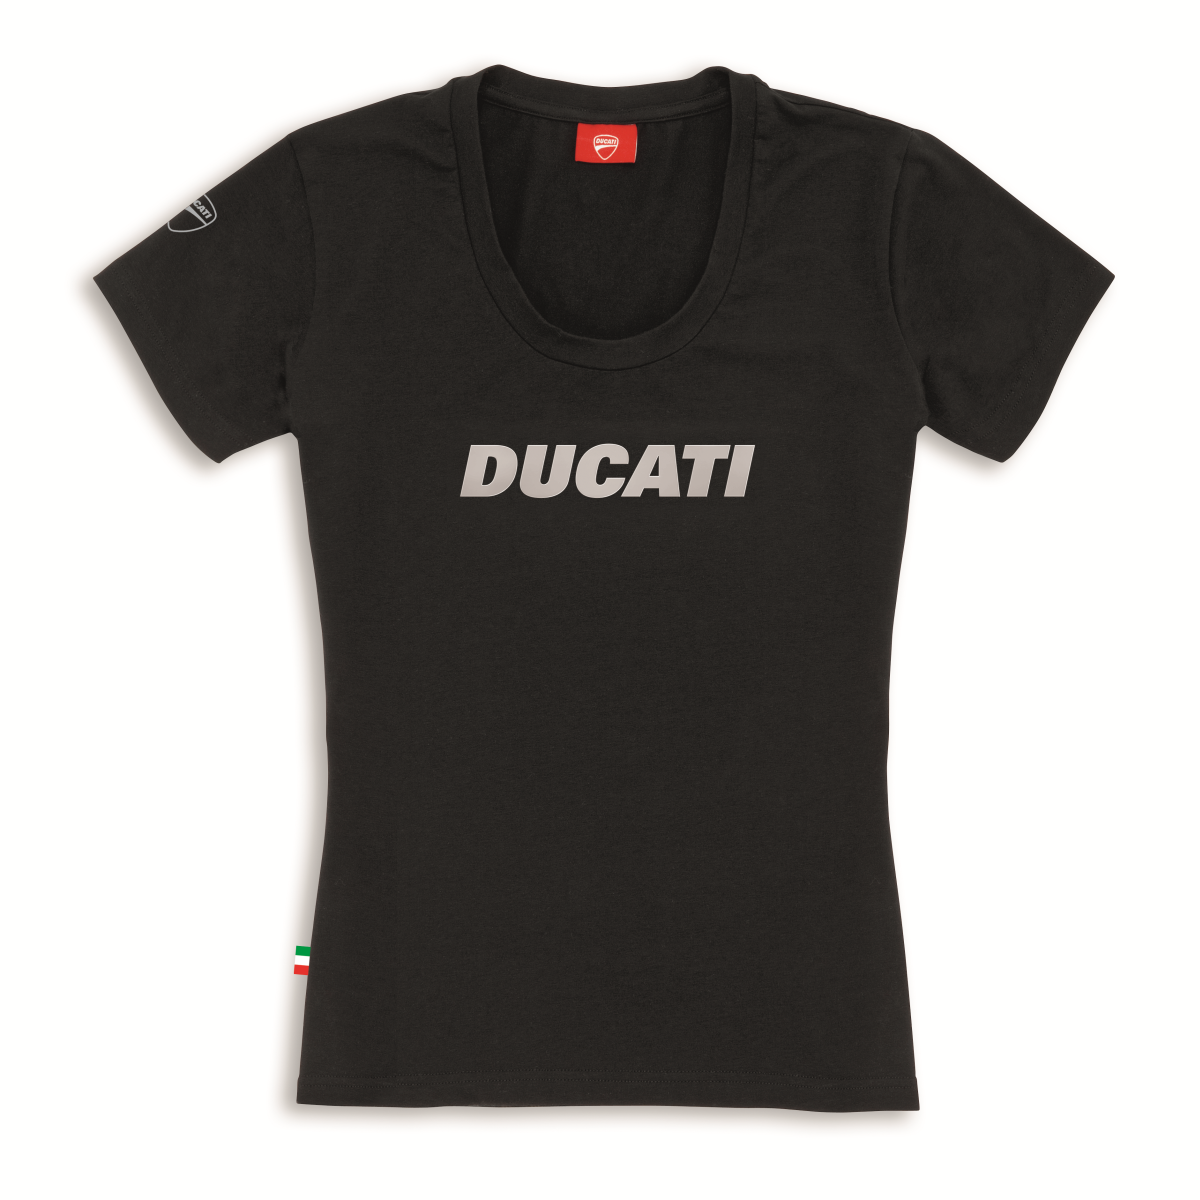 Ducati Ducatiana T-Shirt